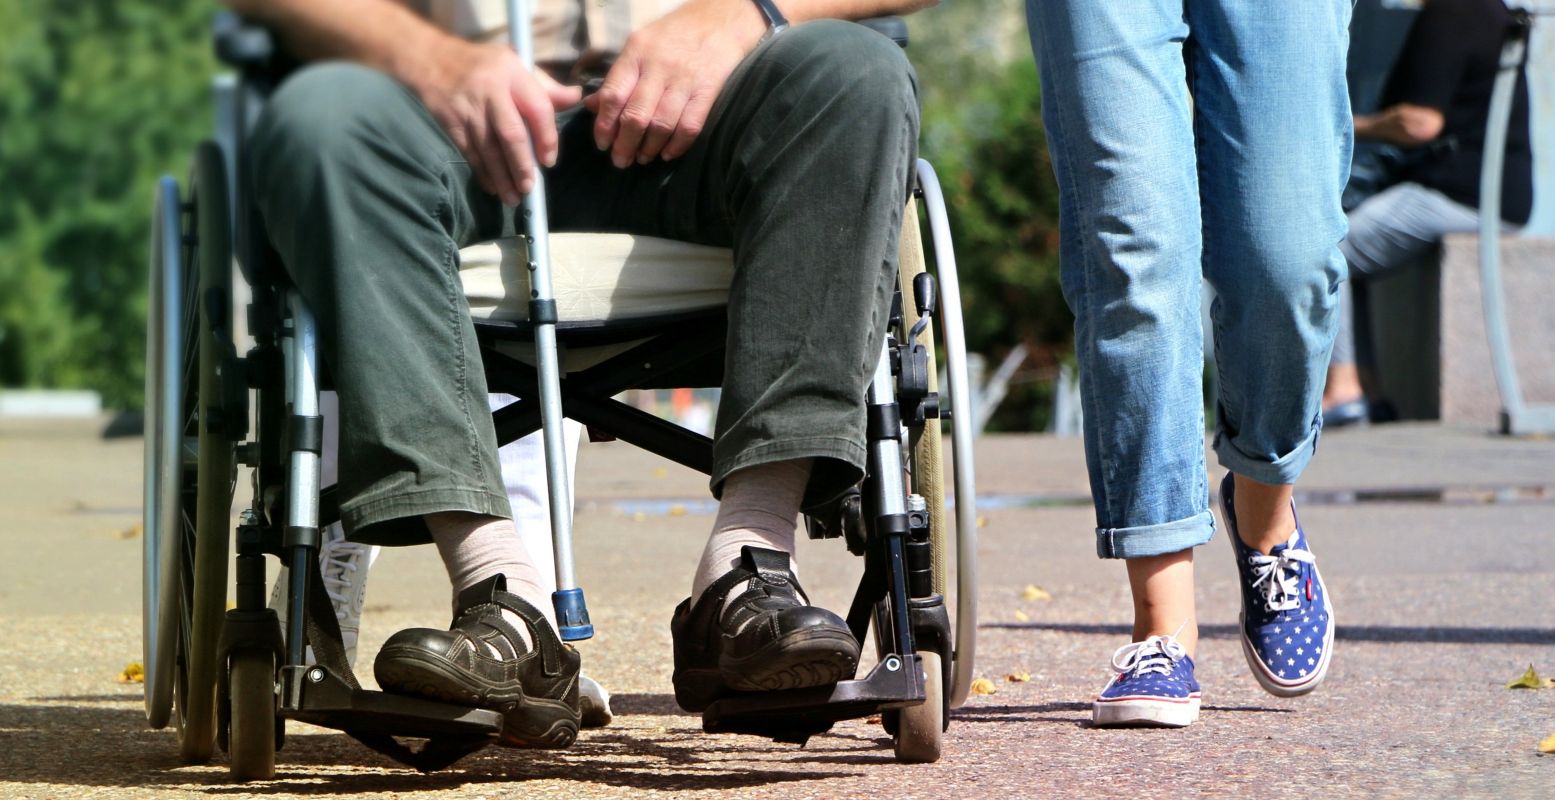 Steeds meer uitstapjes letten op de toegankelijkheid voor mindervaliden. Foto: svklimkin via  Pixabay .